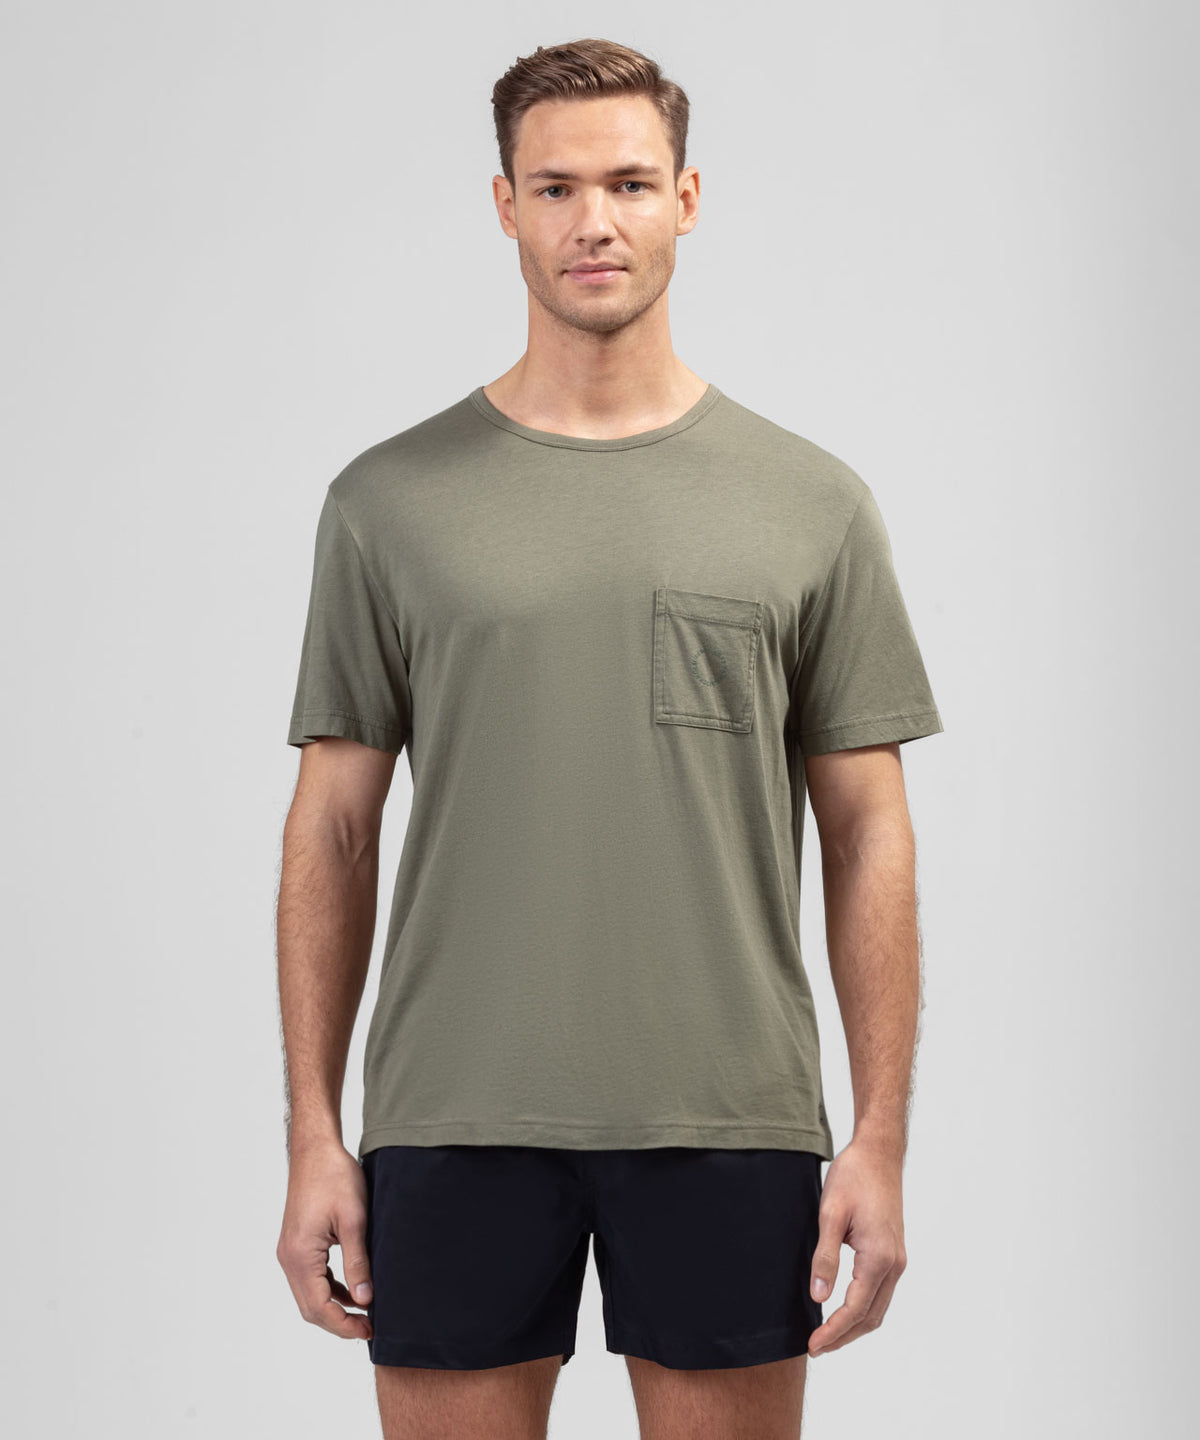 T-Shirt en coton modal avec une poche poitrine: Vert olive